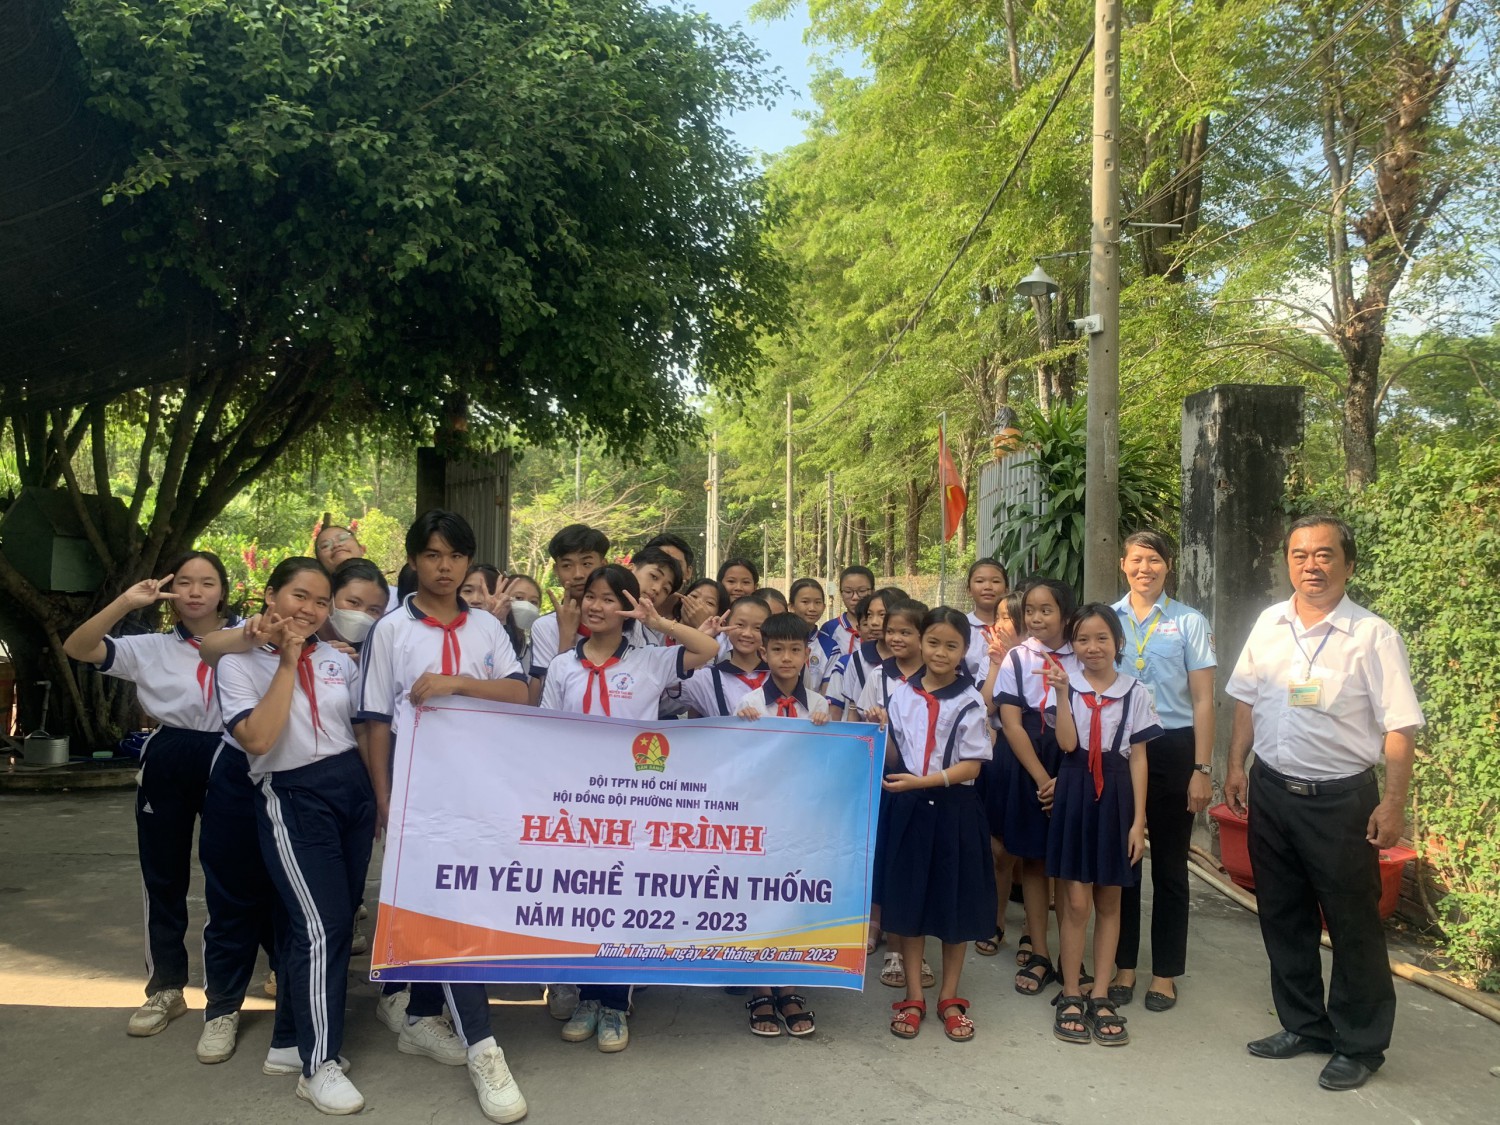 Hội đồng đội Phường Ninh Thạnh tổ chức hành trình “Em yêu nghề truyền thống” năm học 2022-2023.